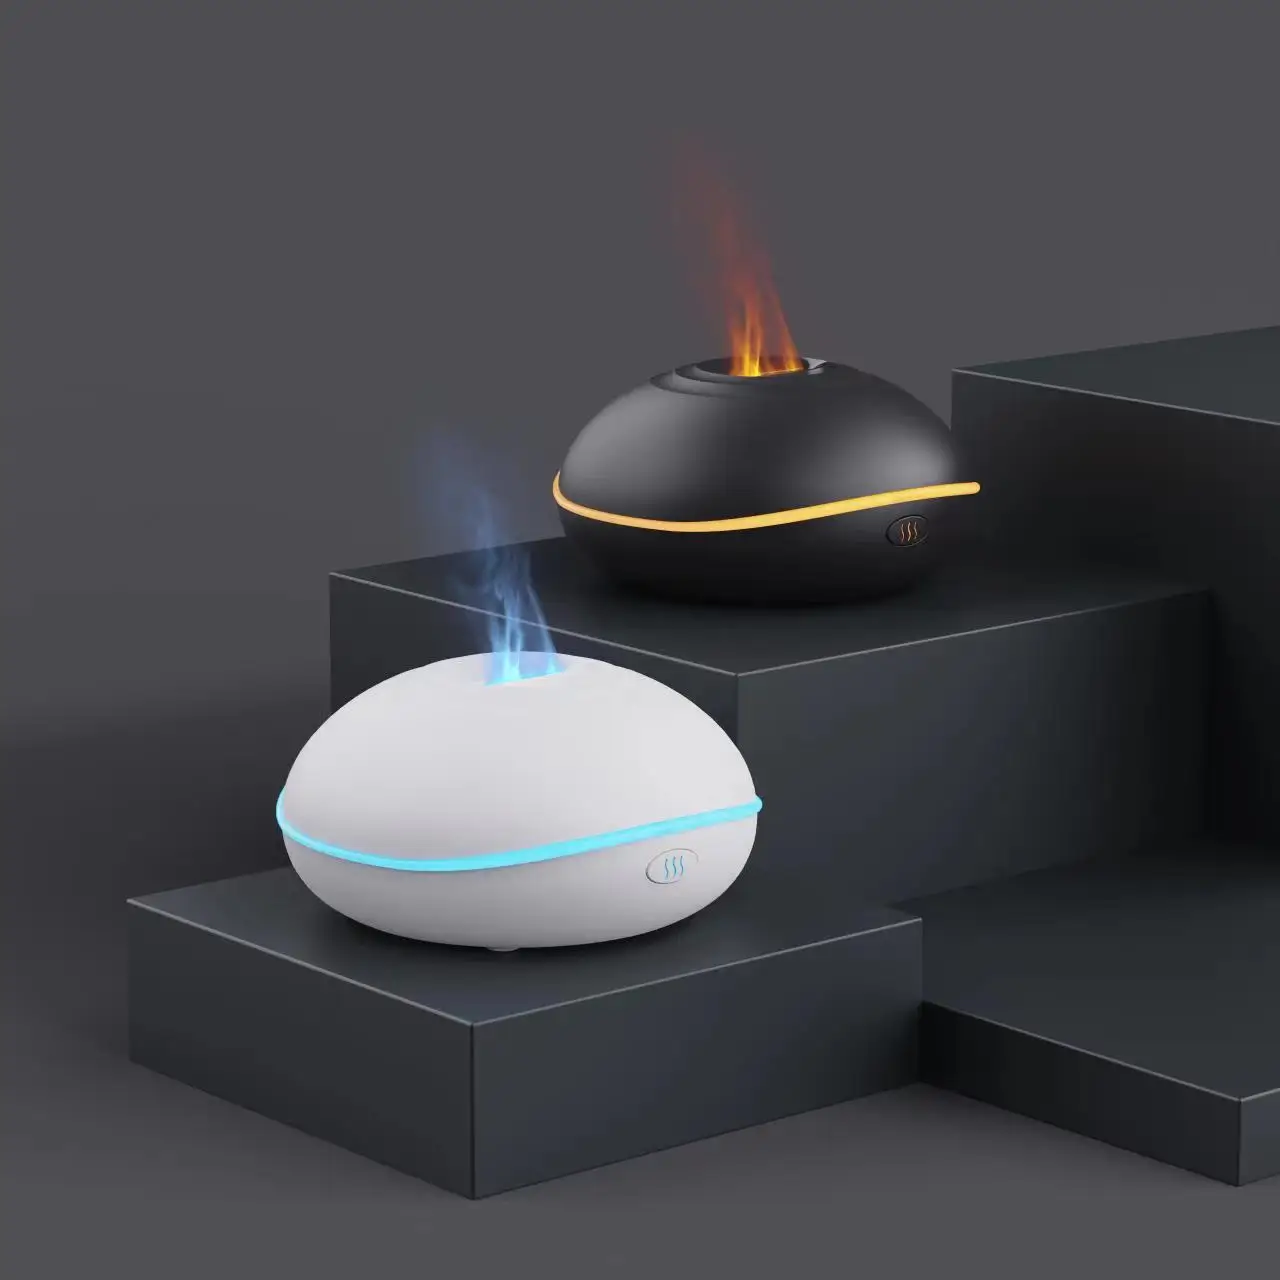 Мини-увлажнитель Ароматерапевтические Диффузоры Освежитель воздуха для дома USB Портативный Увлажнитель воздуха со светодиодной подсветкой Color Flame